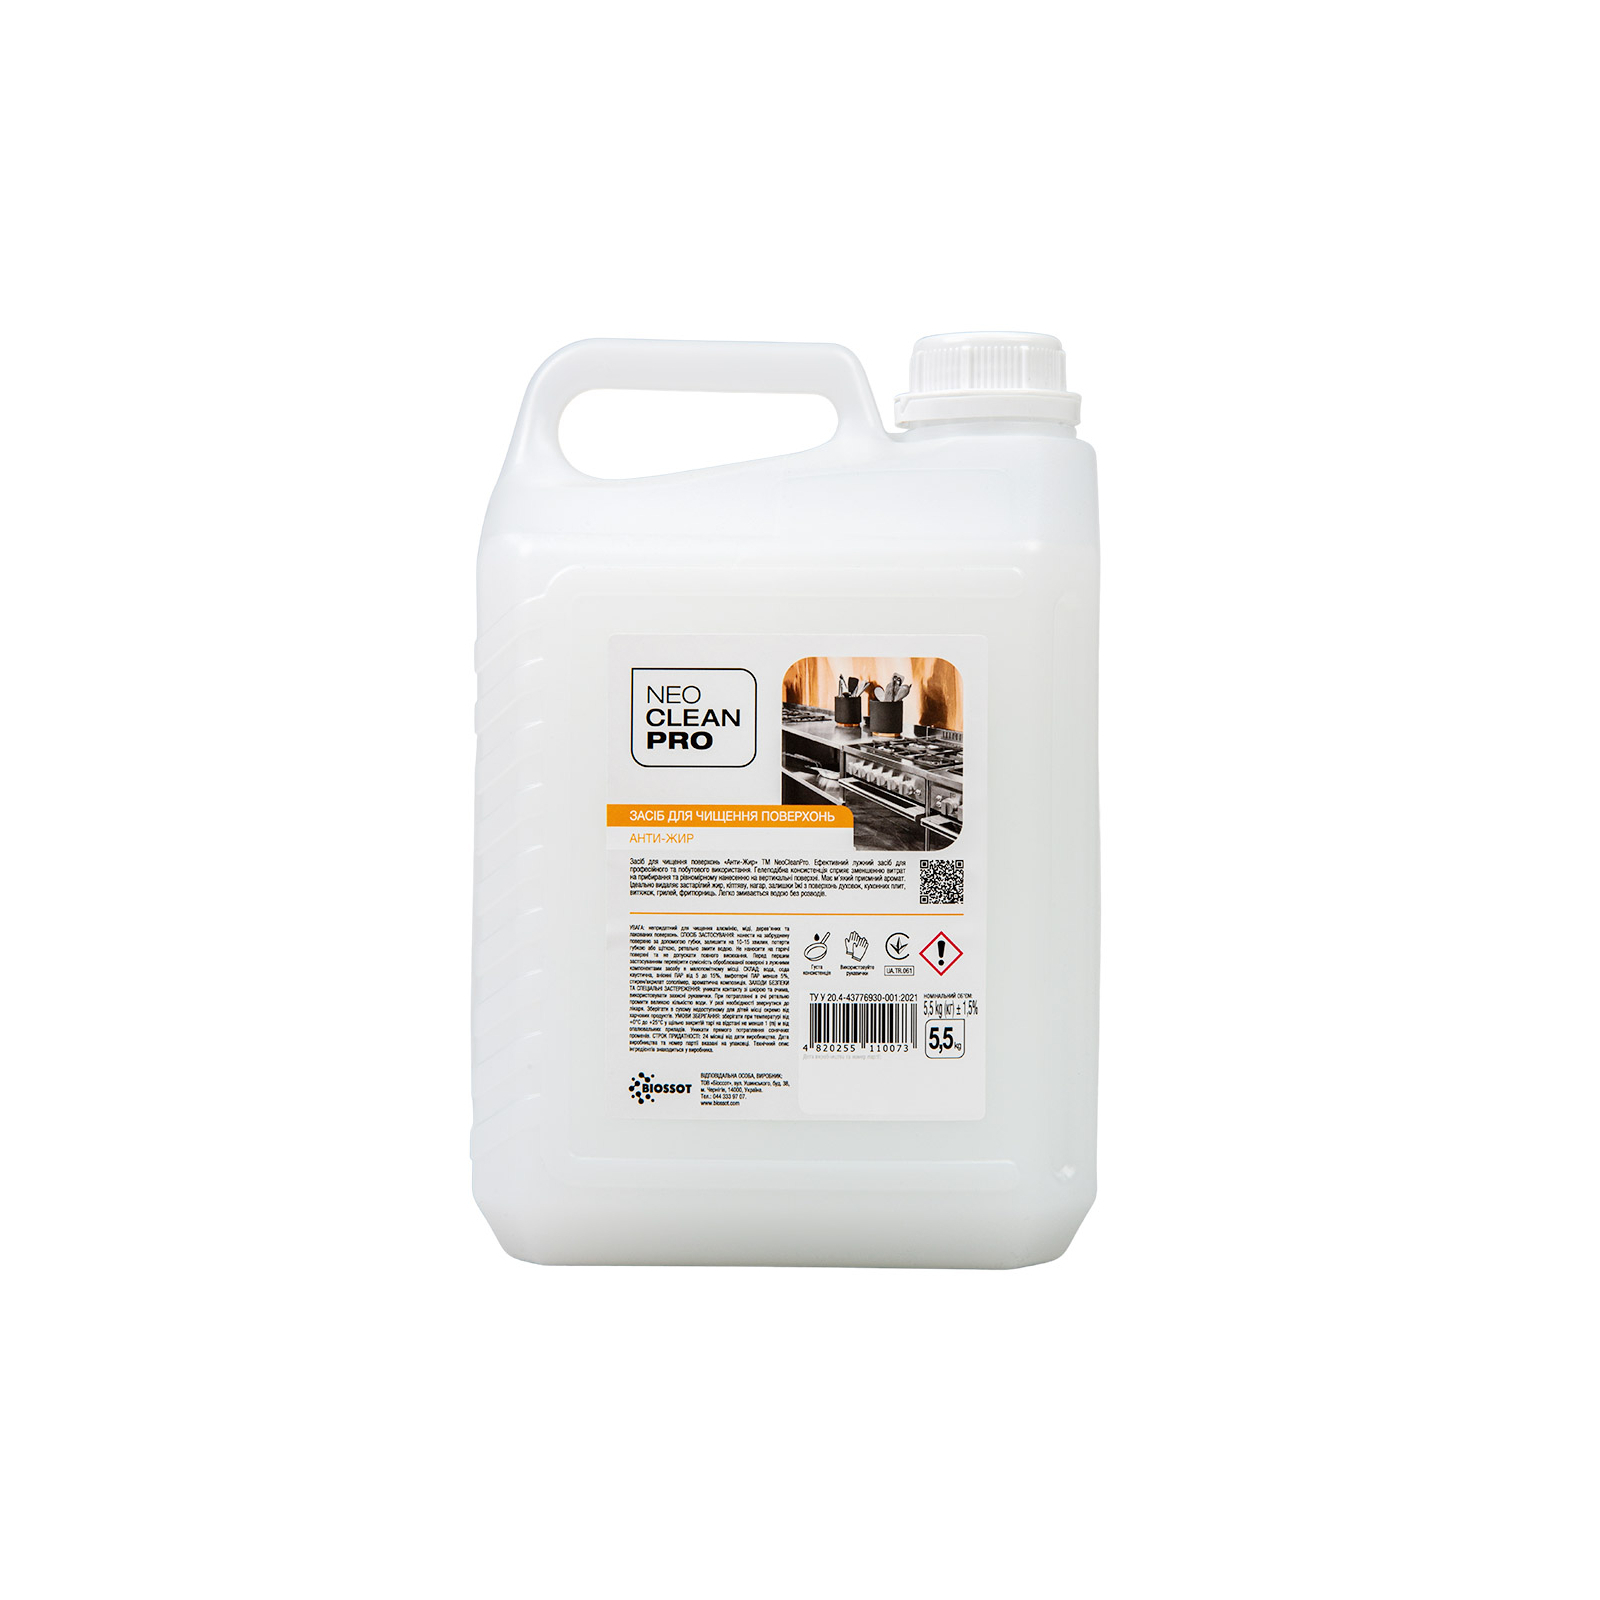 Жидкость для чистки кухни Biossot NeoCleanPro Щелочное гелевое средство Анти-жир для чистки поверхностей 5.5 кг (4820255110073)